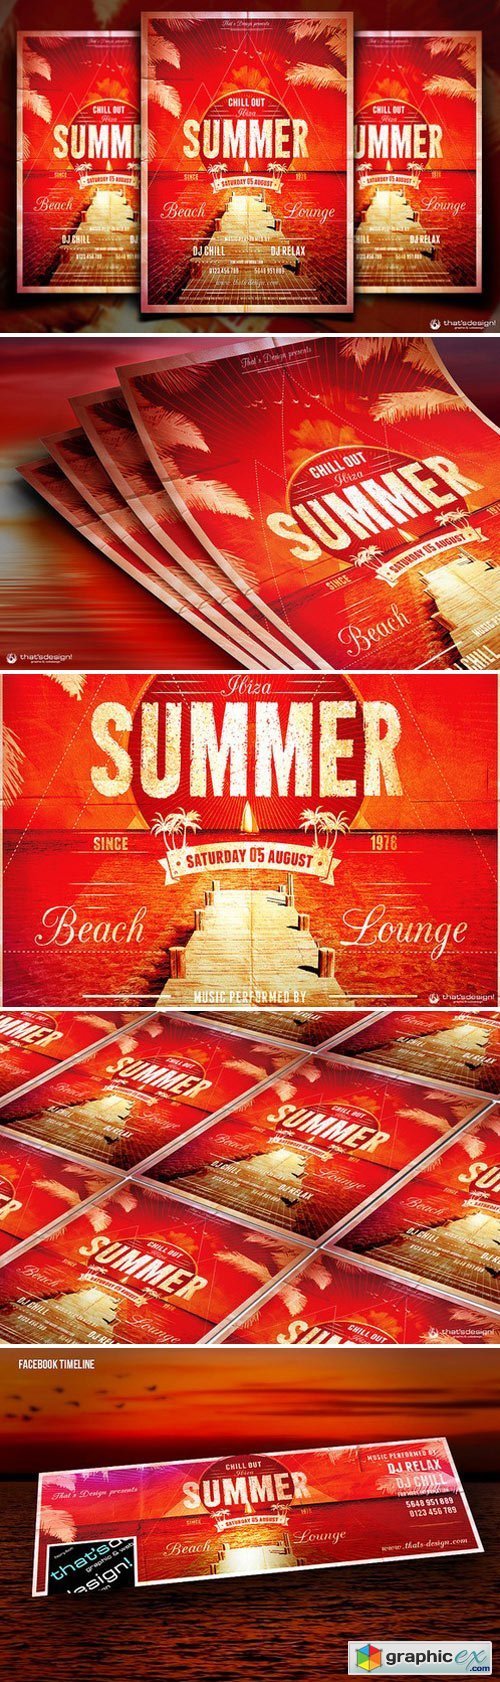 Summer Lounge Flyer Template V1